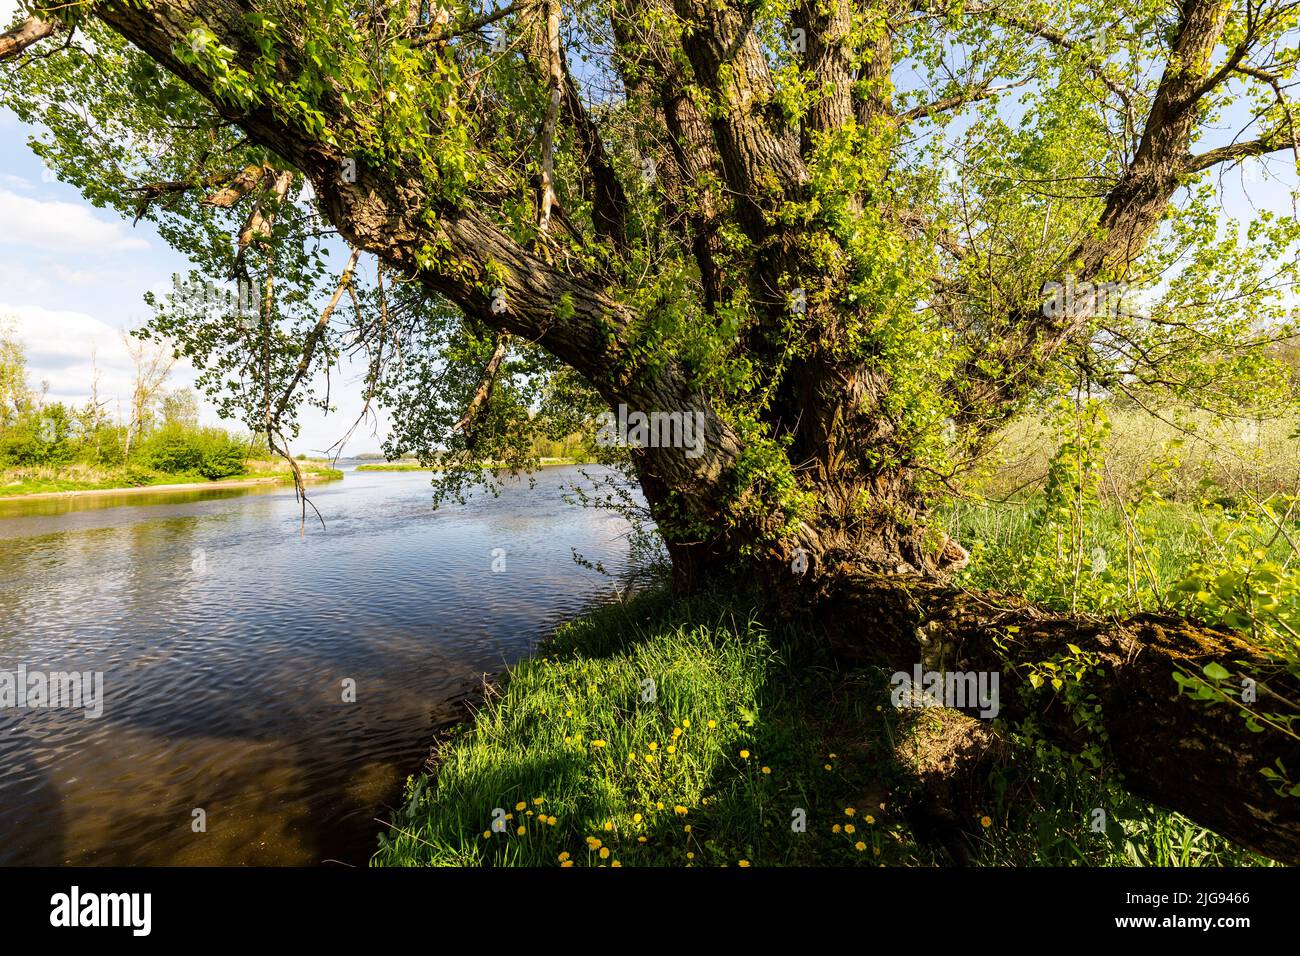 Europa, Poland, Voivodeship Masovian, Vistula River near Wyszogrod - Kepa Antoninska Stock Photo